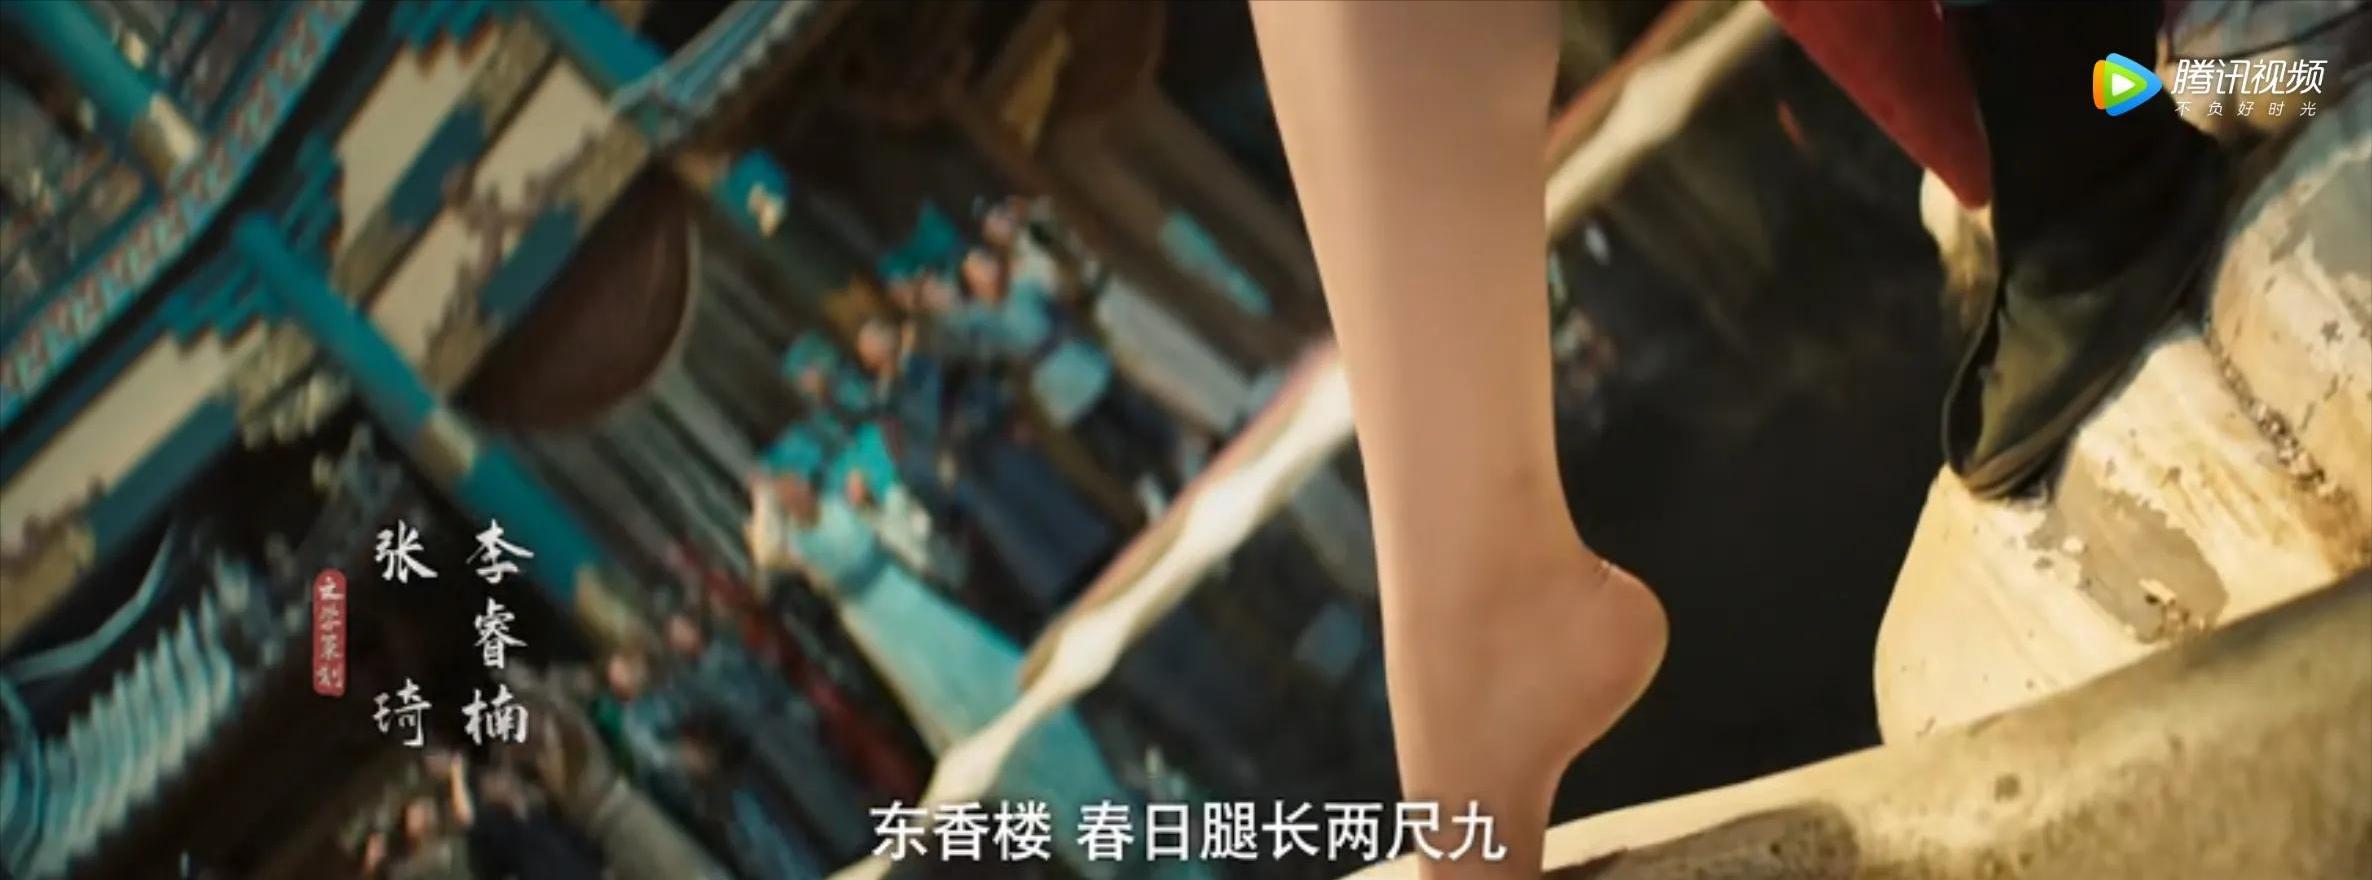 Full movie of porn in Luoyang